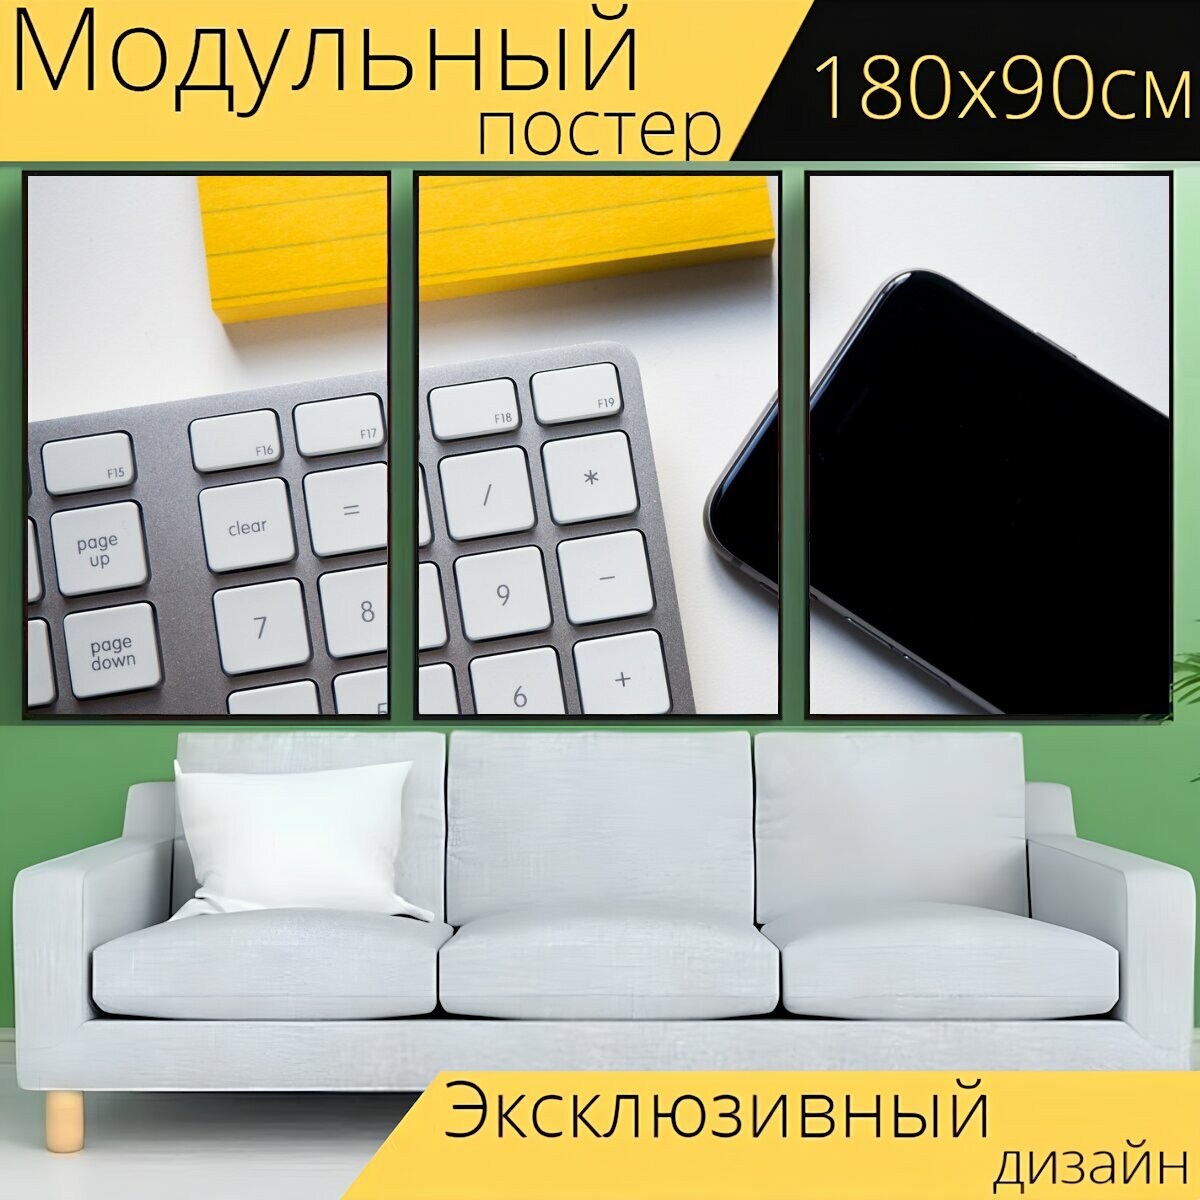 Модульный постер "Клавиатура, офис, стол письменный" 180 x 90 см. для интерьера